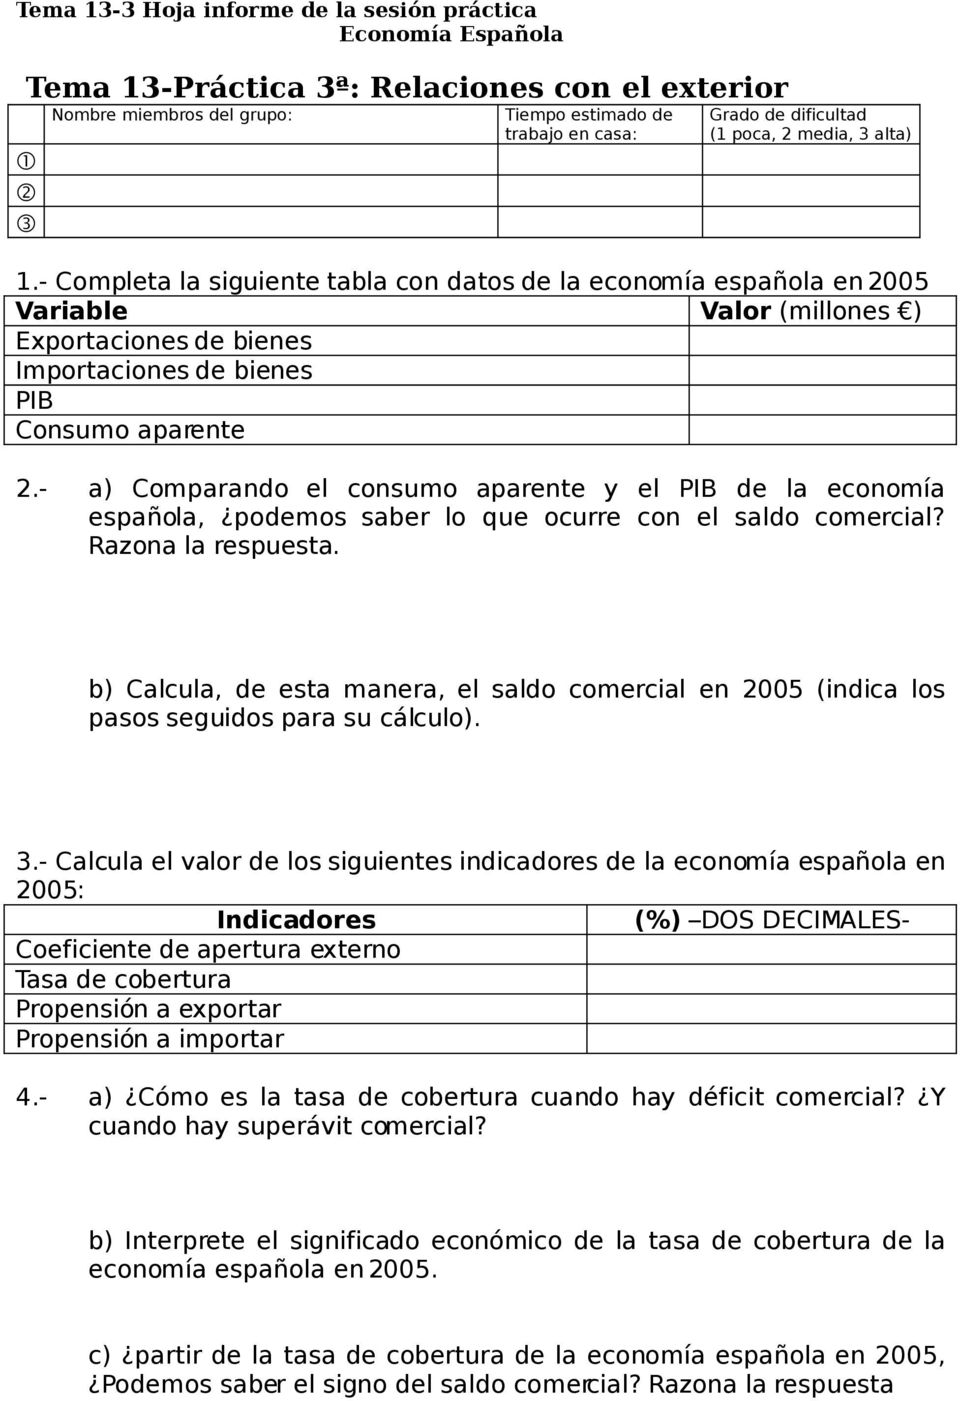 - a) Comparando el consumo aparente y el PIB de la economía española, podemos saber lo que ocurre con el saldo comercial? Razona la respuesta.